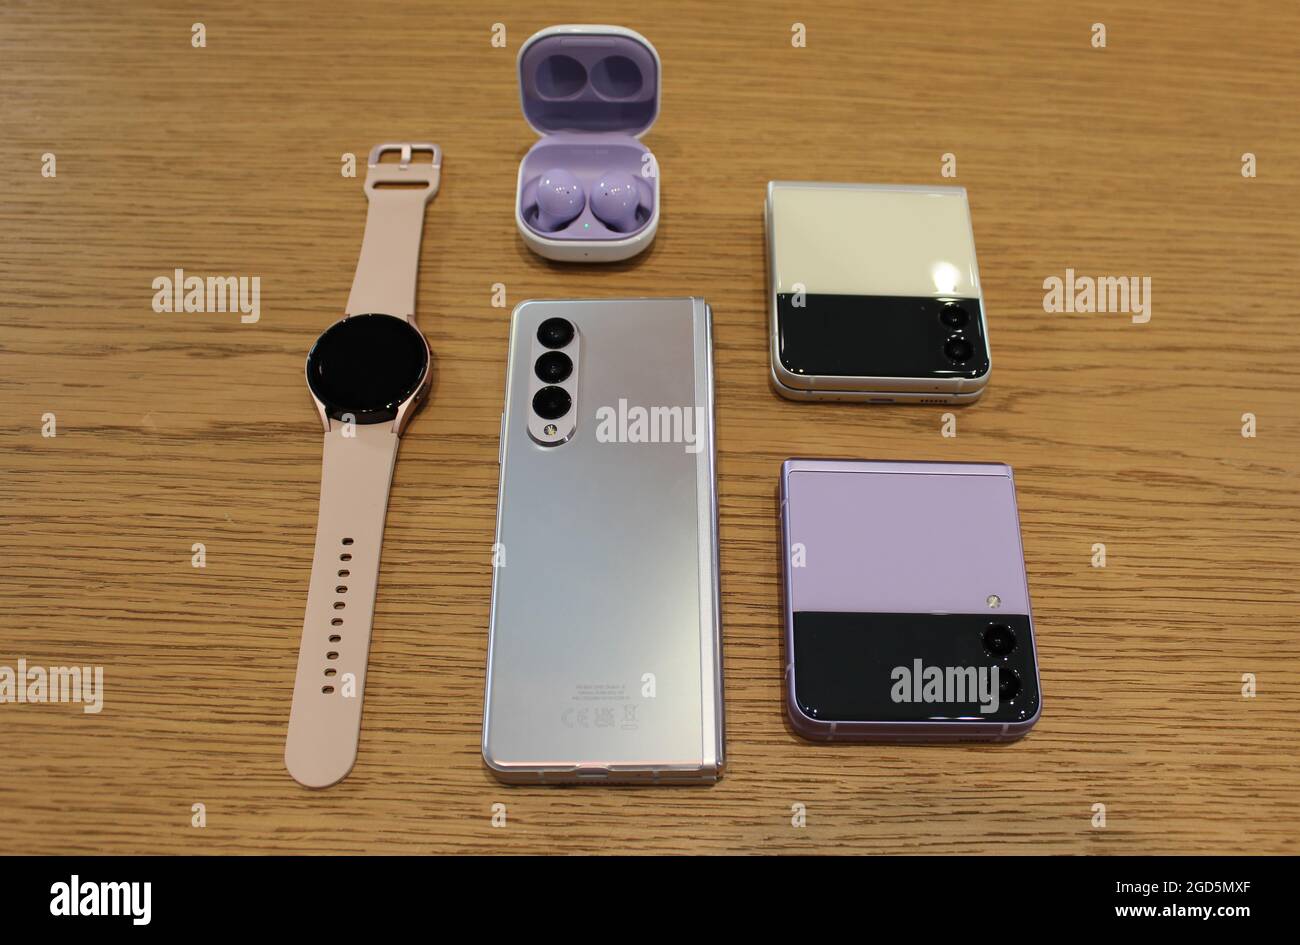 Die neuen Samsung Galaxy Z Fold3 und Z Flip3 mit Galaxy Watch4 und Galaxy Buds2 Ohrhörer . Samsung hat erklärt, dass die Zukunft faltbar ist, als der Technologie-Riese seine neueste Generation von Klapptelefonen vorstellte. Bilddatum: Montag, 9. August 2021. Stockfoto